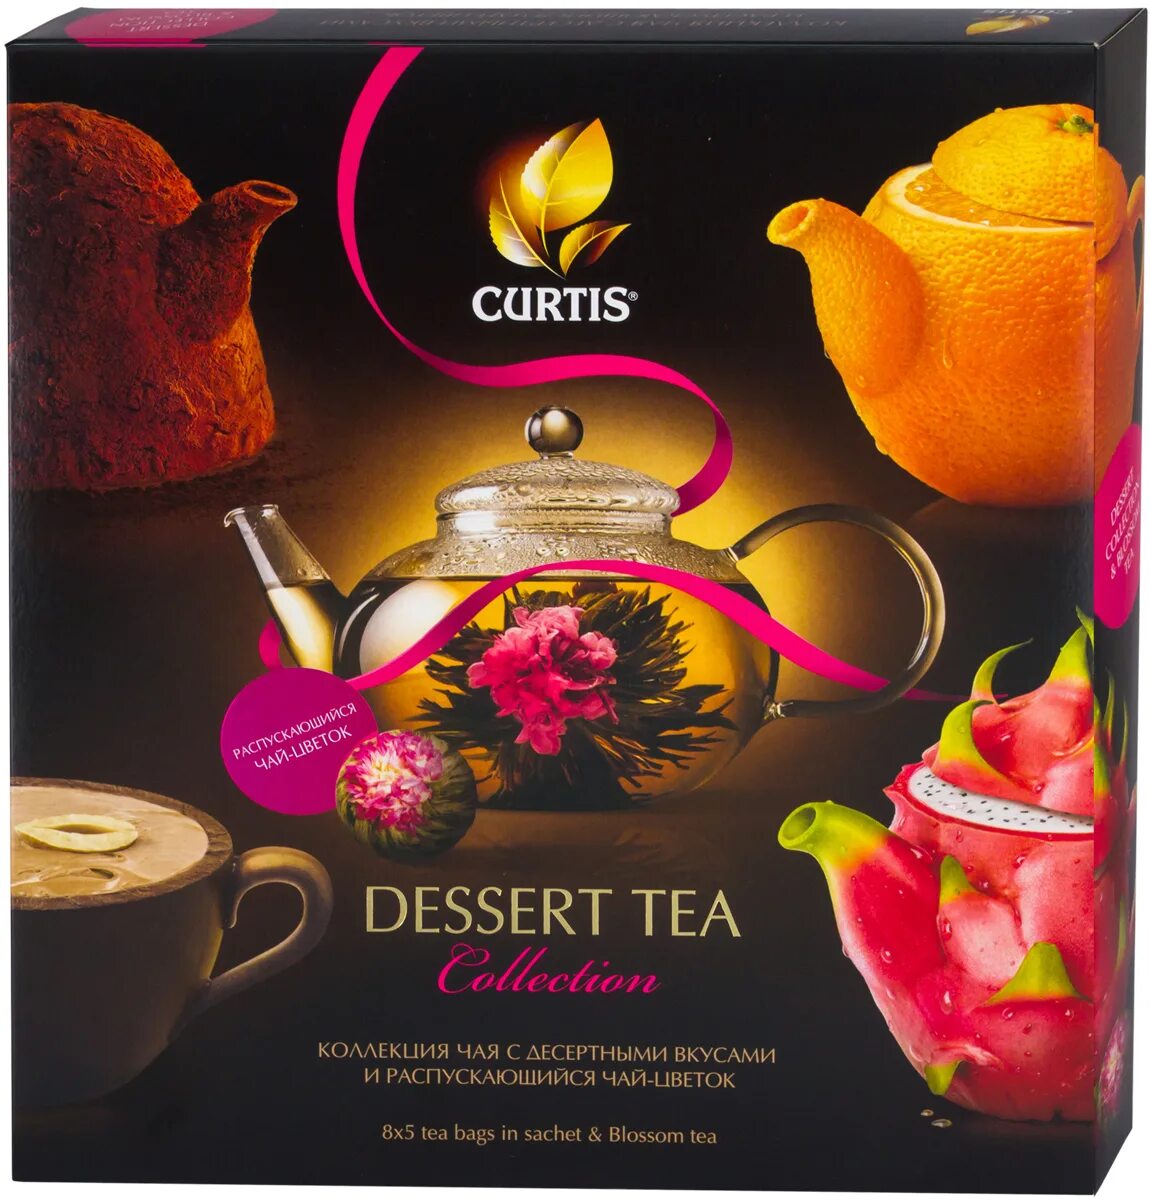 Чай в пакетиках в магните. Чай Кёртис десерт набор 40. Чай Curtis Dessert Tea collection. Чай Кертис 40 пакетиков набор. Чай Кертис подарочный набор в магните.